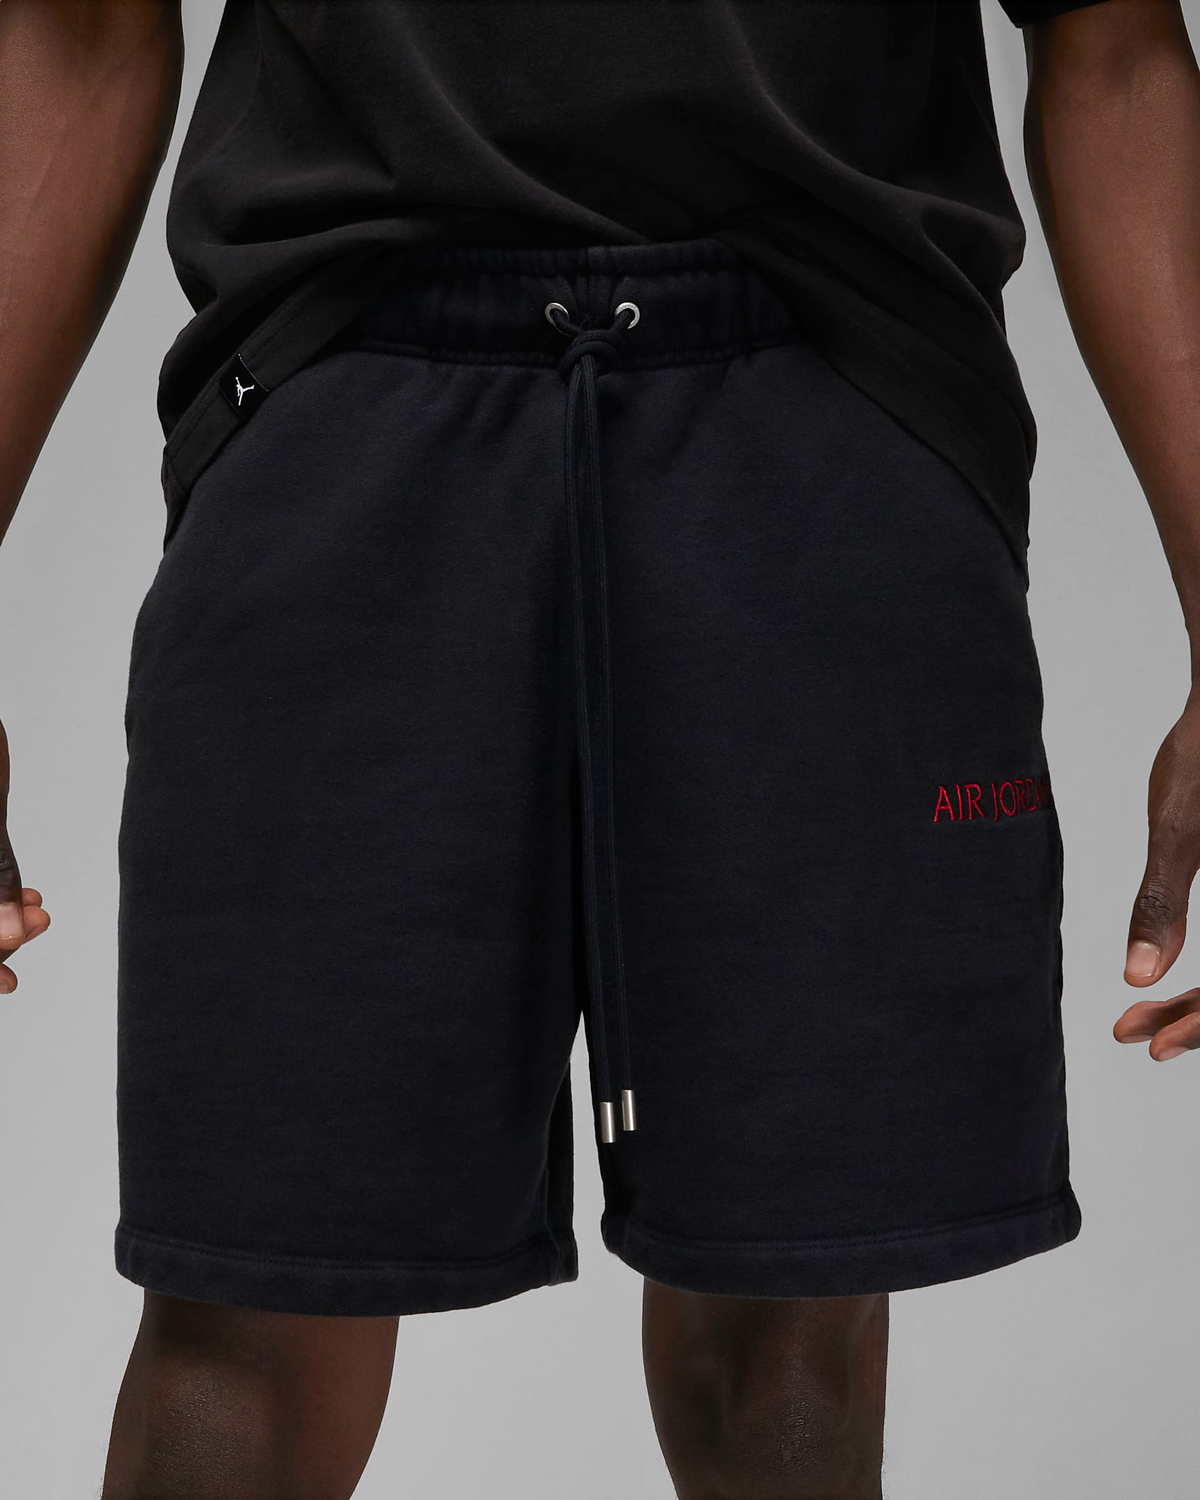 Air Jordan Wordmark Shirt Hoodie and Shorts in Black Gym Red